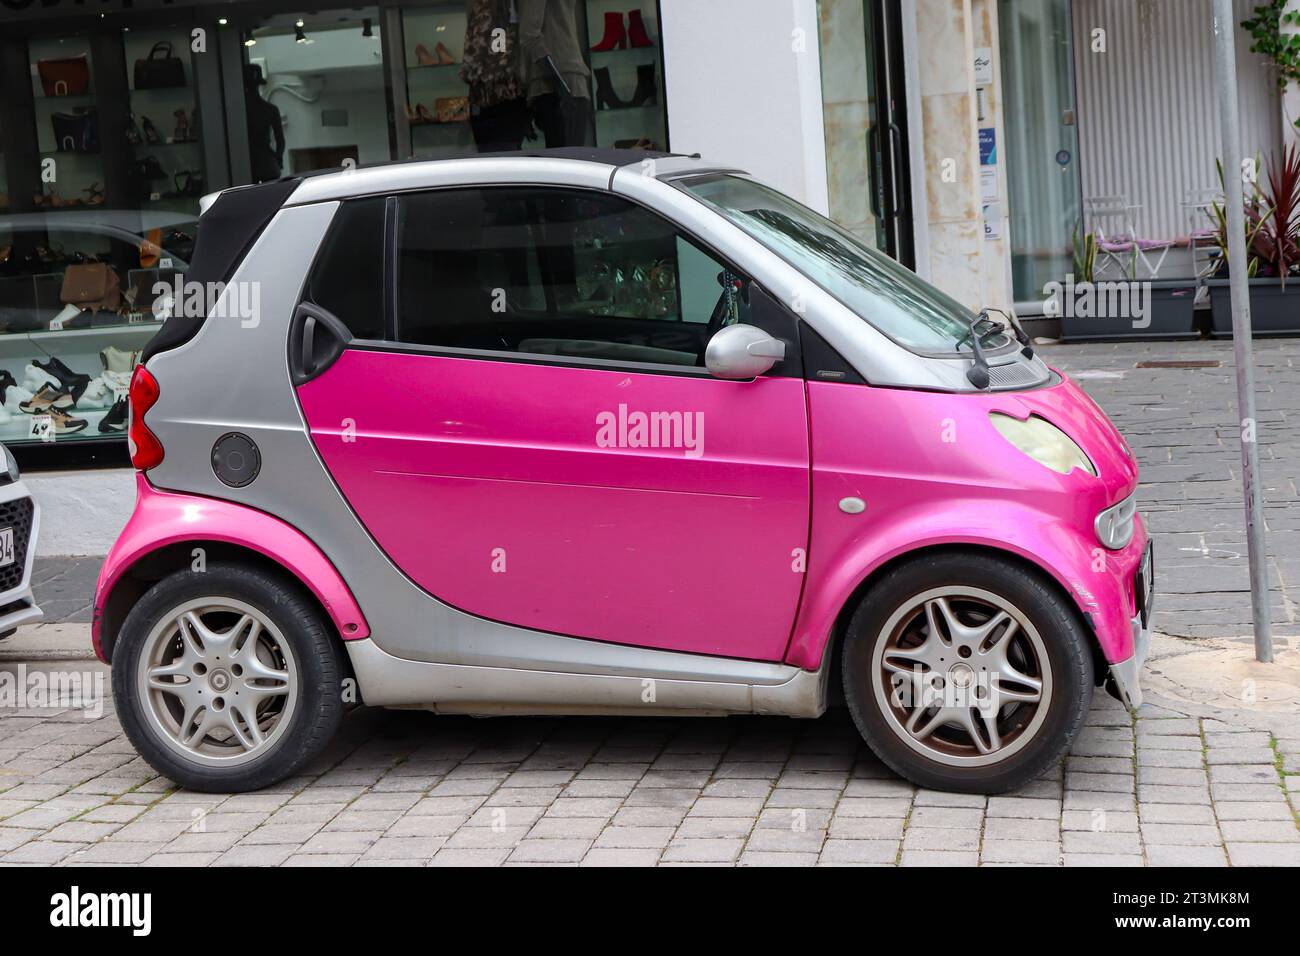 Smart Fortwo de color rosa brillante, un coche urbano de dos plazas construido por la división Smart del Grupo Mercedes-Benz Foto de stock